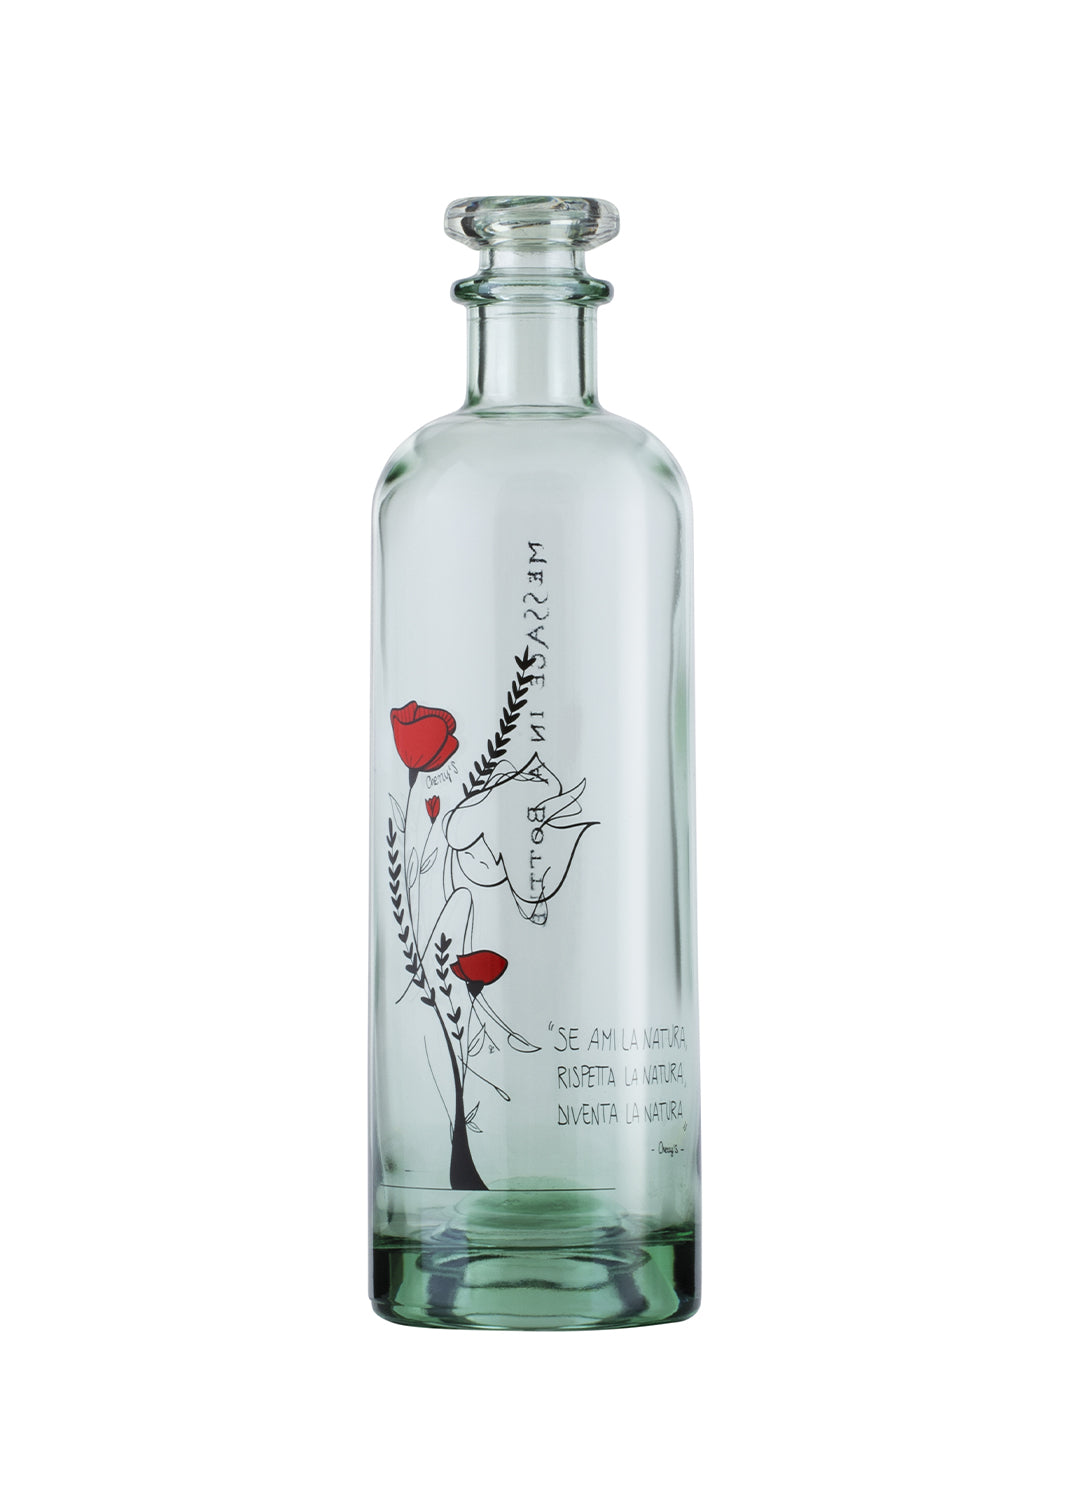 Bottiglia - Wild Message in a bottle - Ama la Natura 700 ml - 2